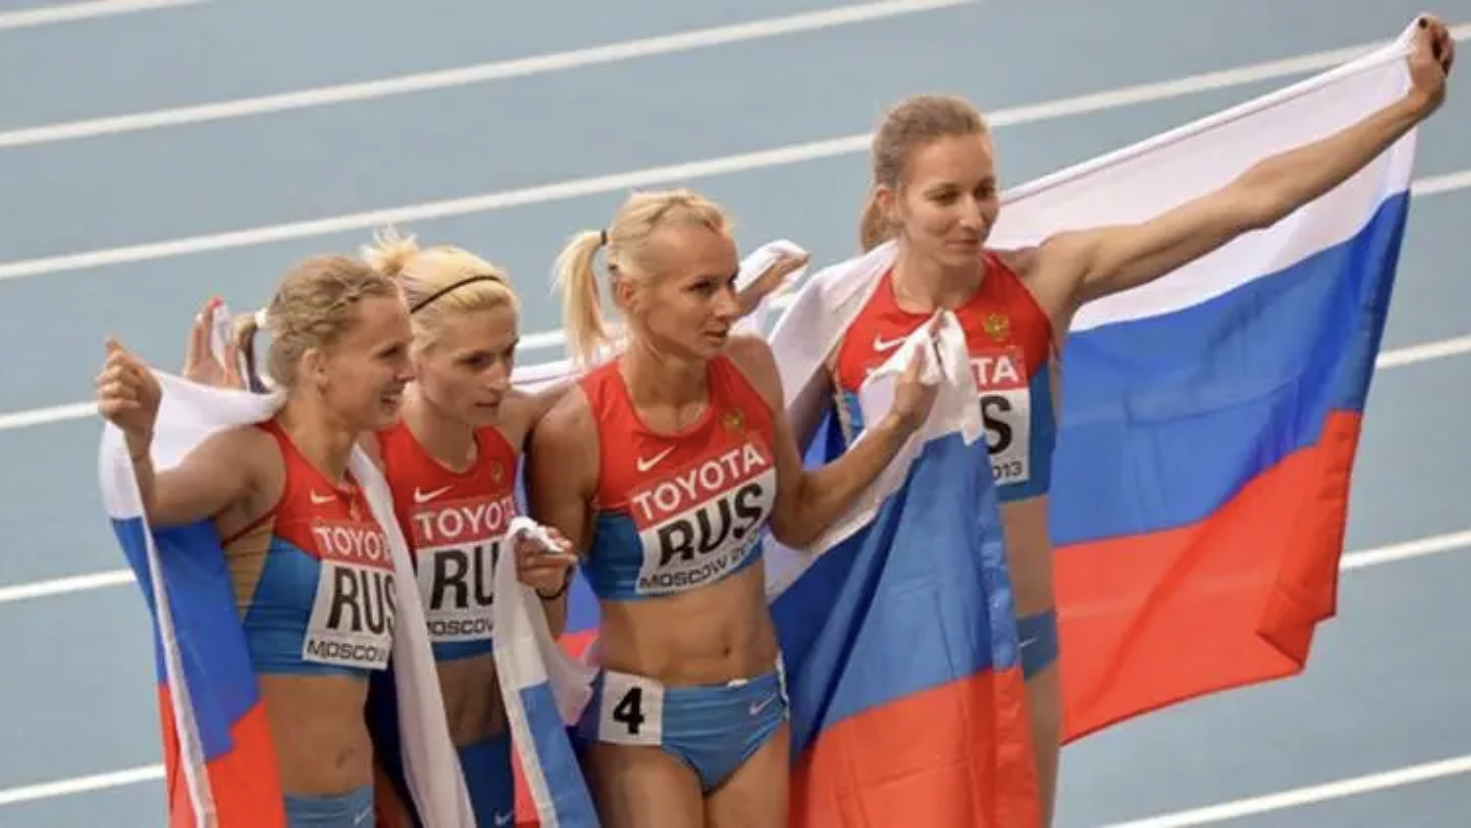 Сборная россии по атлетике